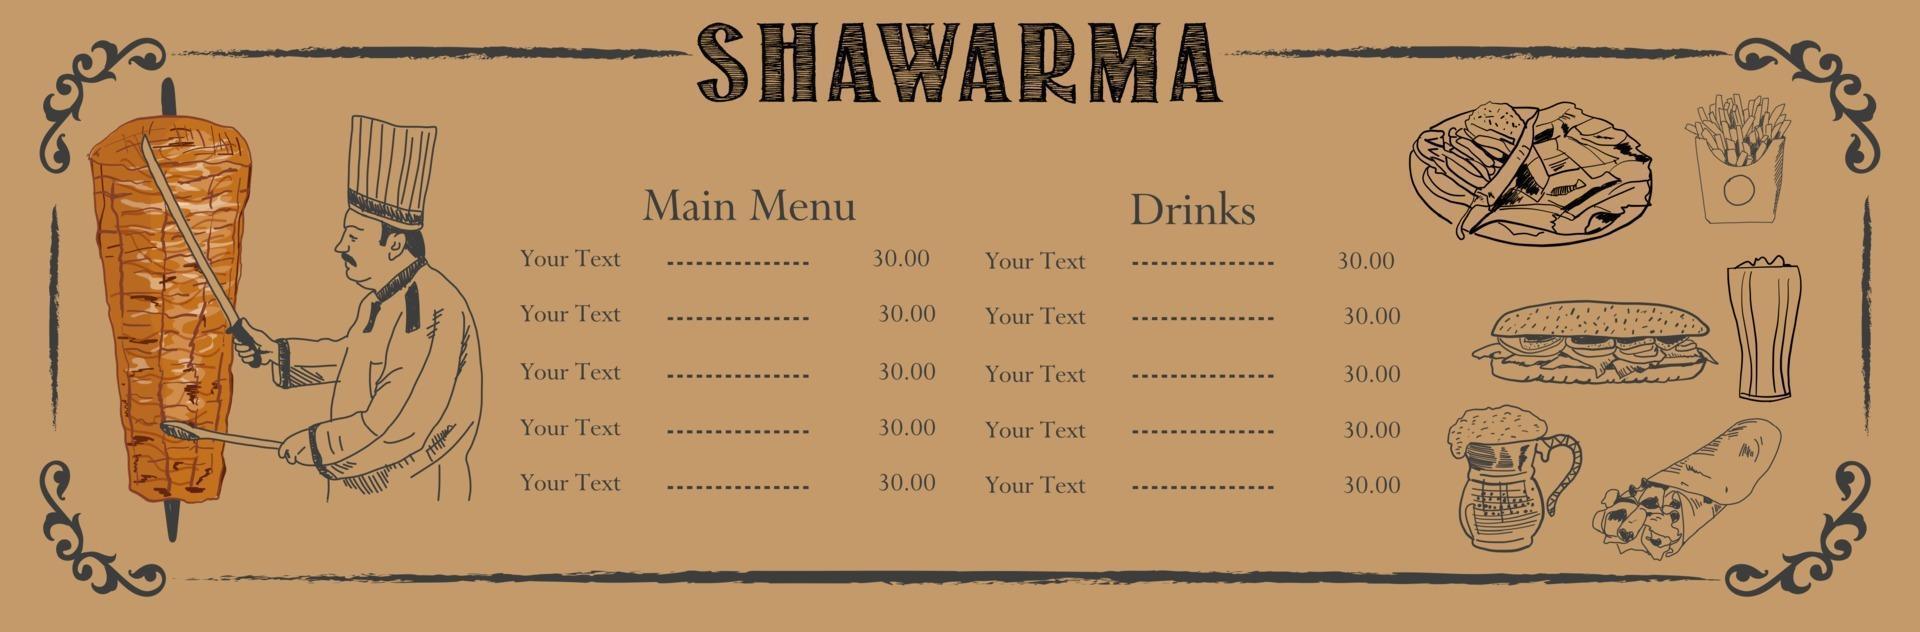 shawarma matlagning och ingredienser för kebab. vektor